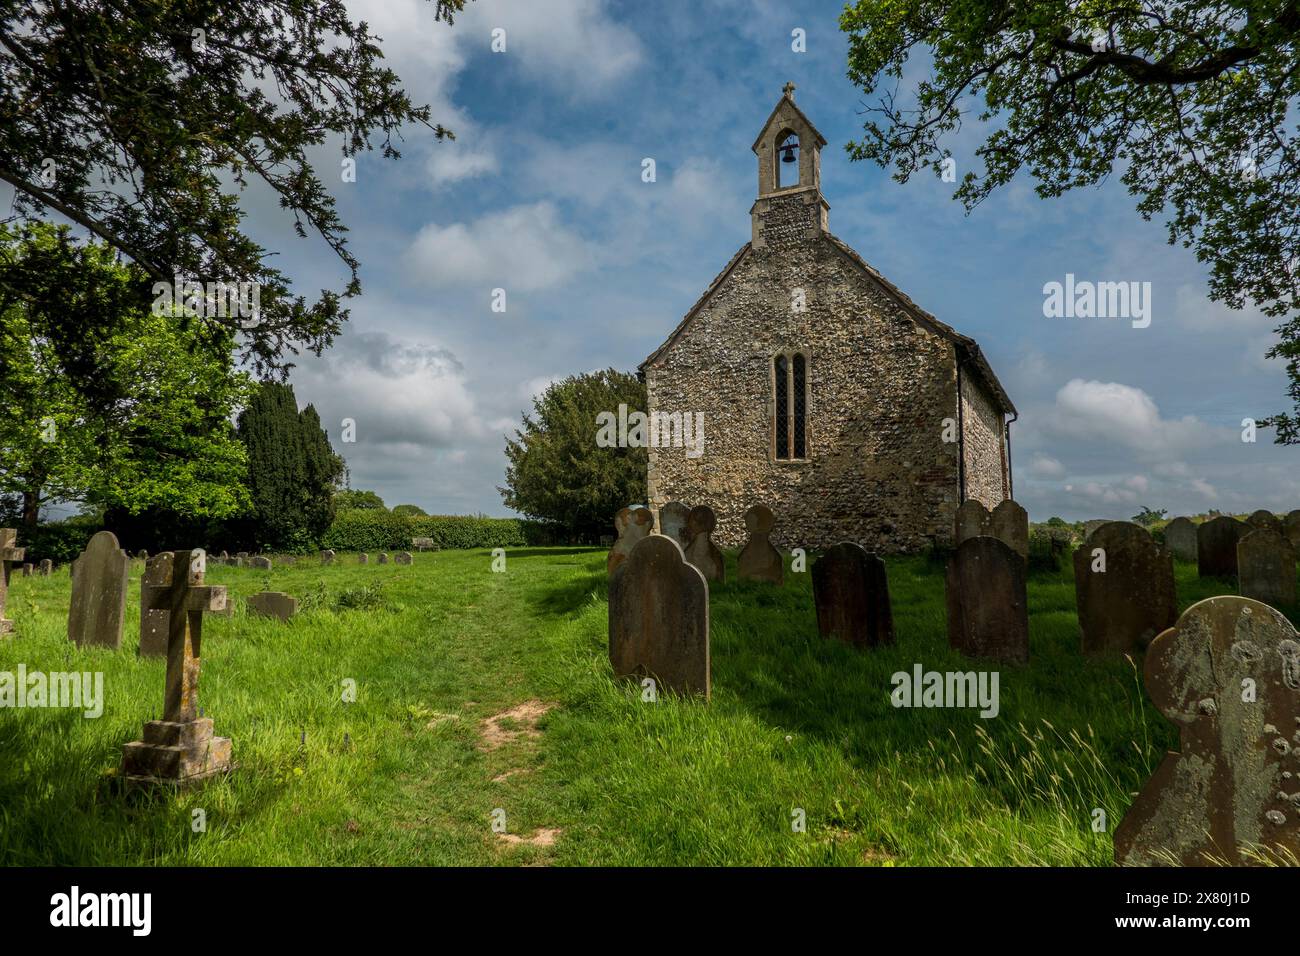 Buncton Chapel (alias All Saints Church), une minuscule chapelle normande classée Grade 1 dans le West Sussex, en Angleterre Banque D'Images